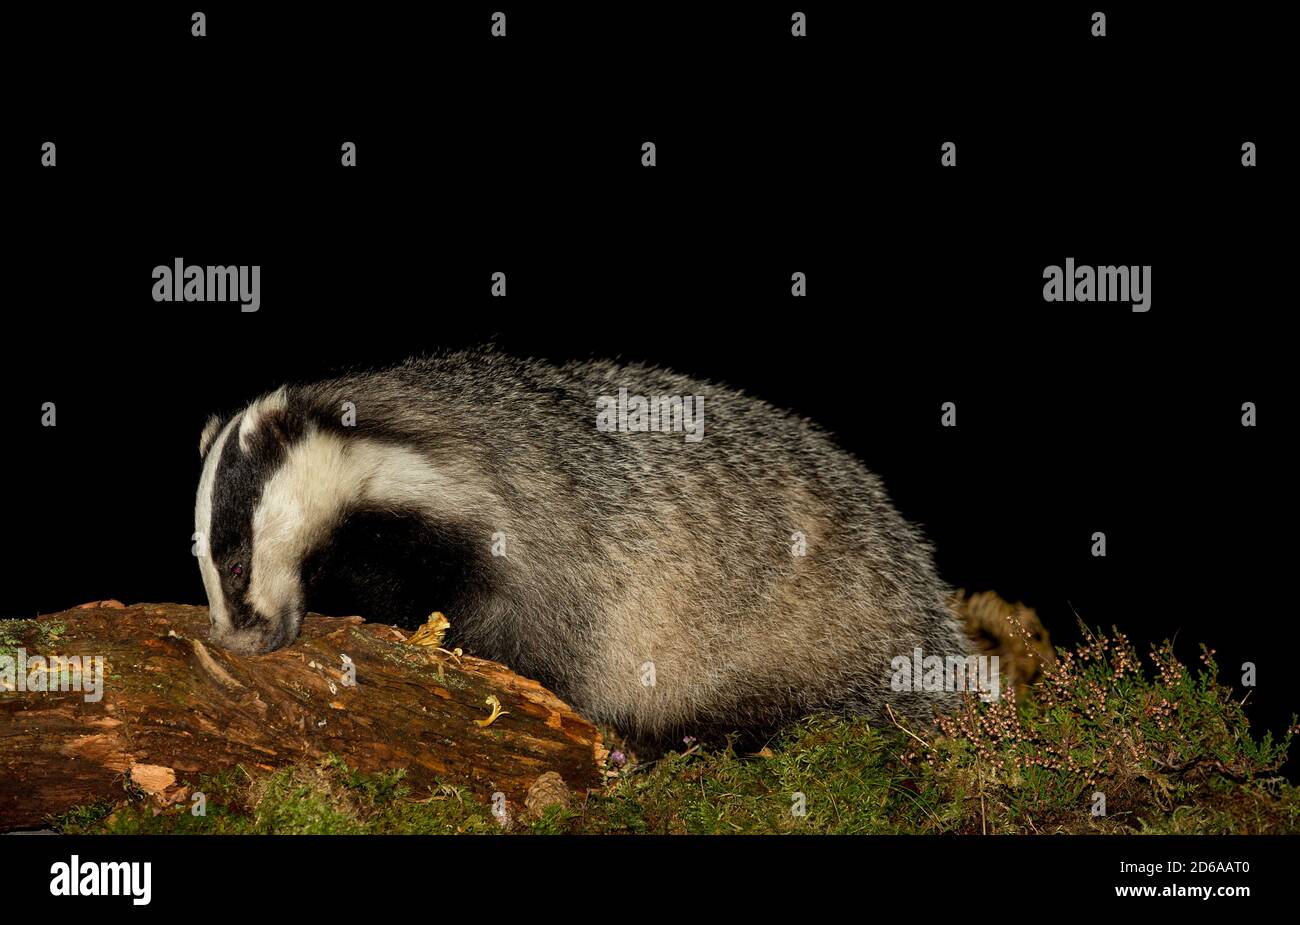 Badger (Nombre científico: Meles Meles) cerca de un tejón salvaje, nativo forrajeo en un tronco en descomposición en el hábitat natural del bosque. Imagen nocturna. Foto de stock